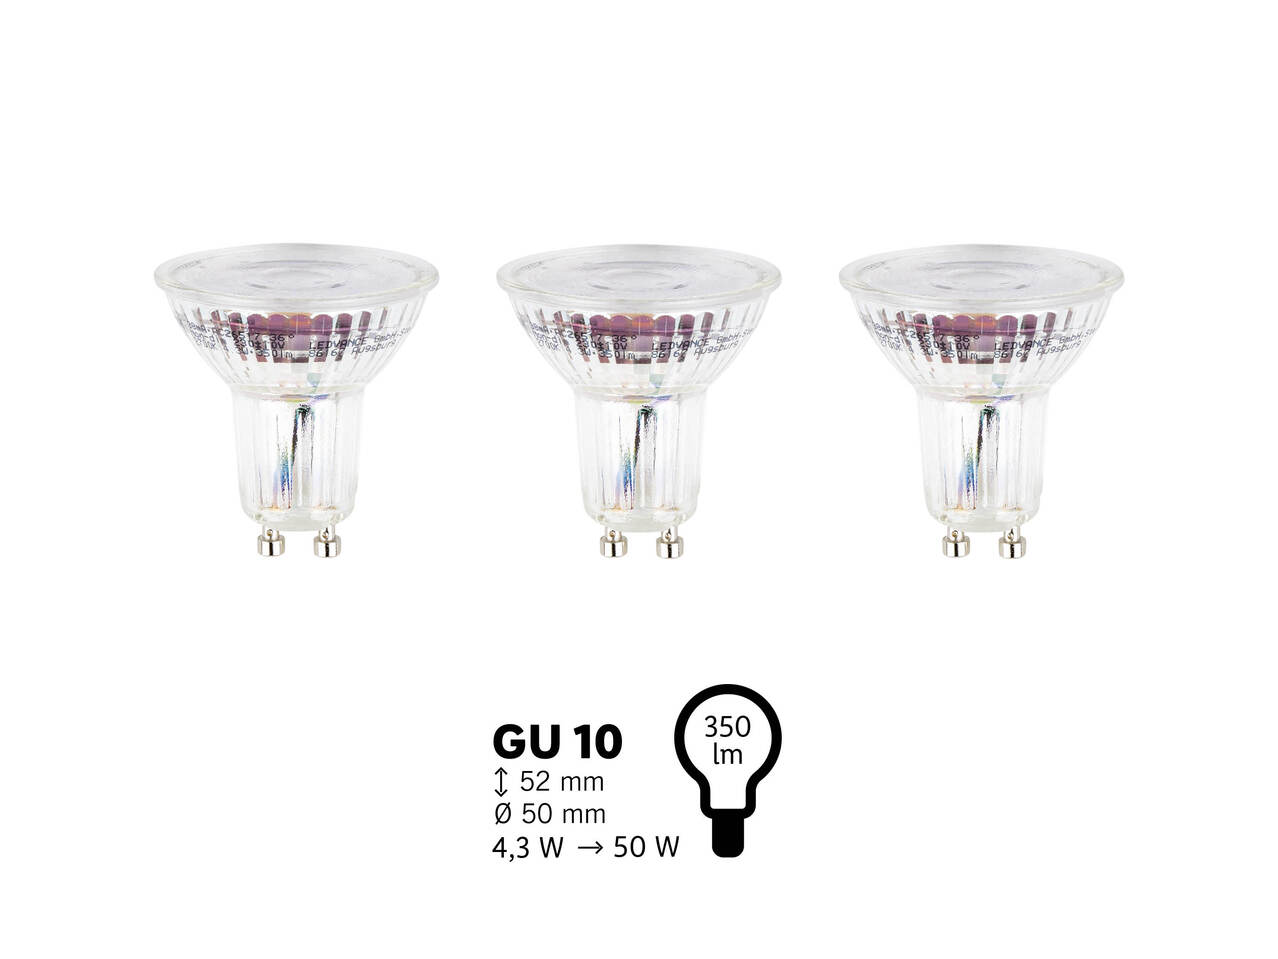 OSRAM® Żarówki LED, 3 szt. , cena 19,99 PLN 
OSRAM® Żarówki LED, 3 szt. ...